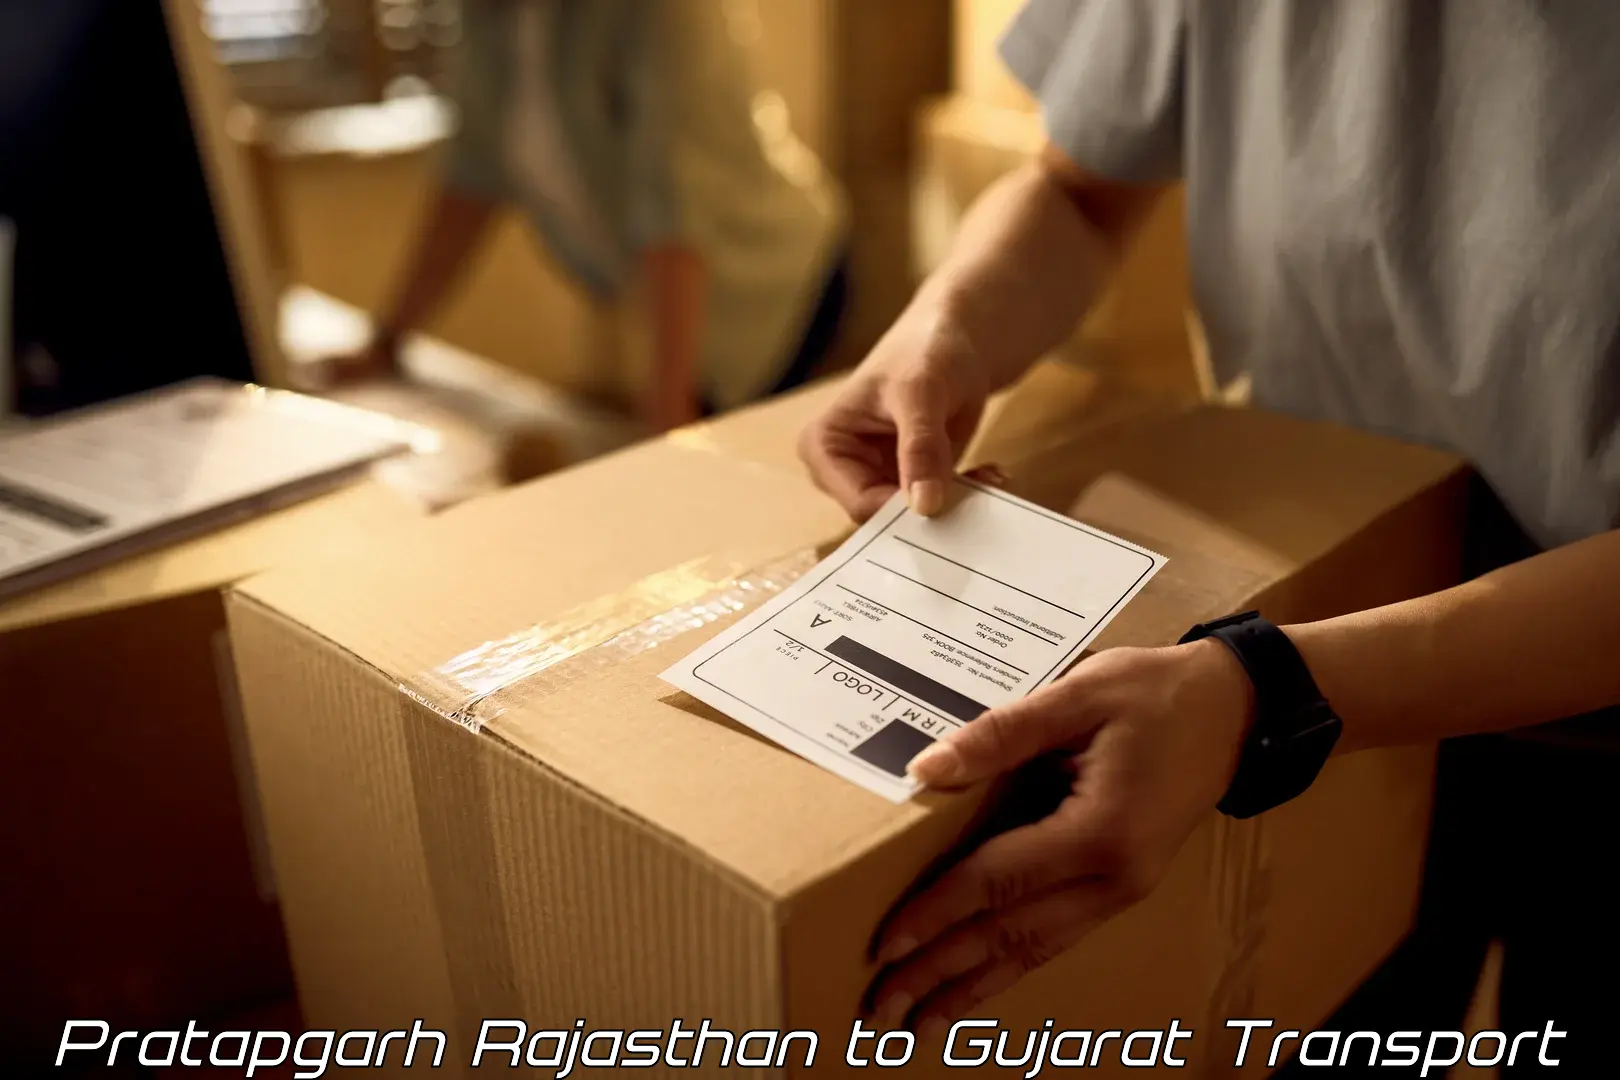 Pick up transport service Pratapgarh Rajasthan to Narmada Gujarat